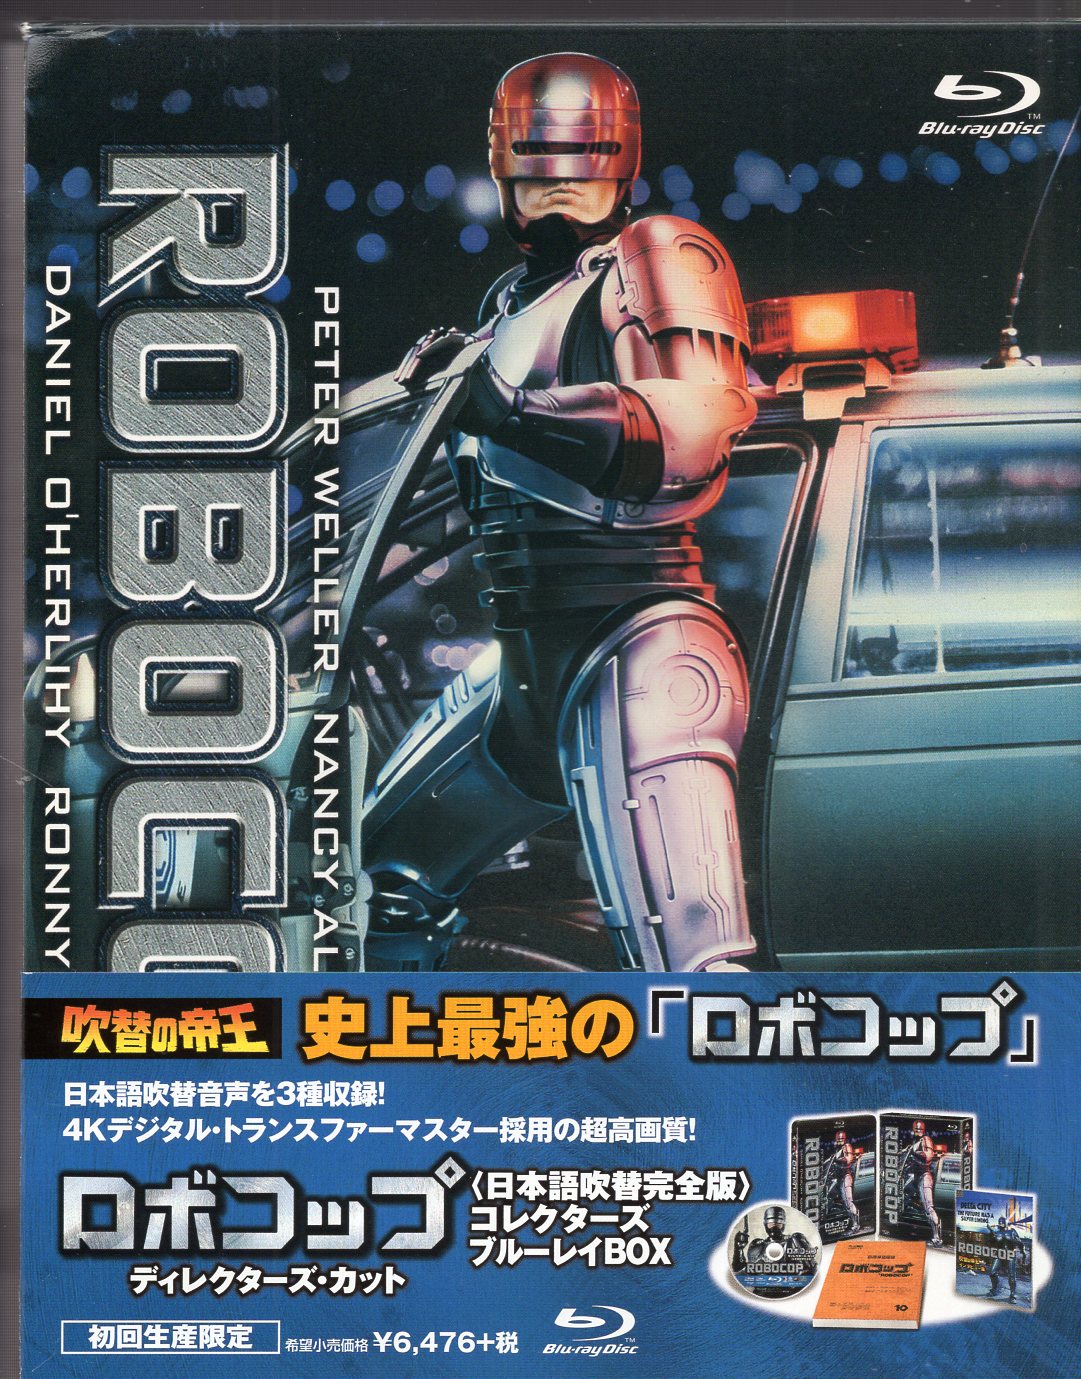 ロボコップ 1987年 英盤Blu-ray スチールブック